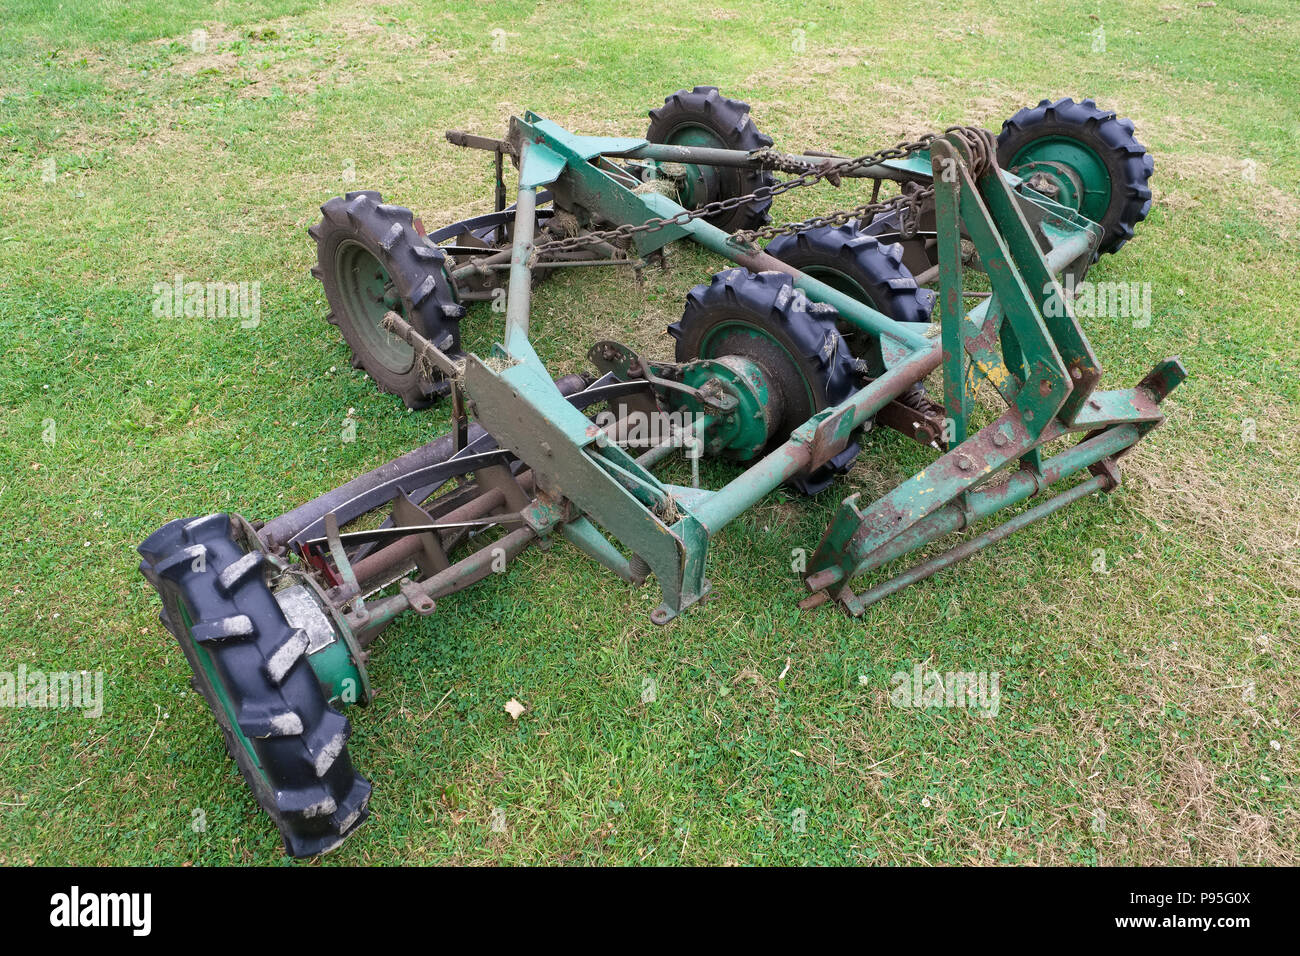 Rasenmäher Traktor Gras schneiden Landwirtschaft grüne Reifen Felgen  Montage Stockfotografie - Alamy